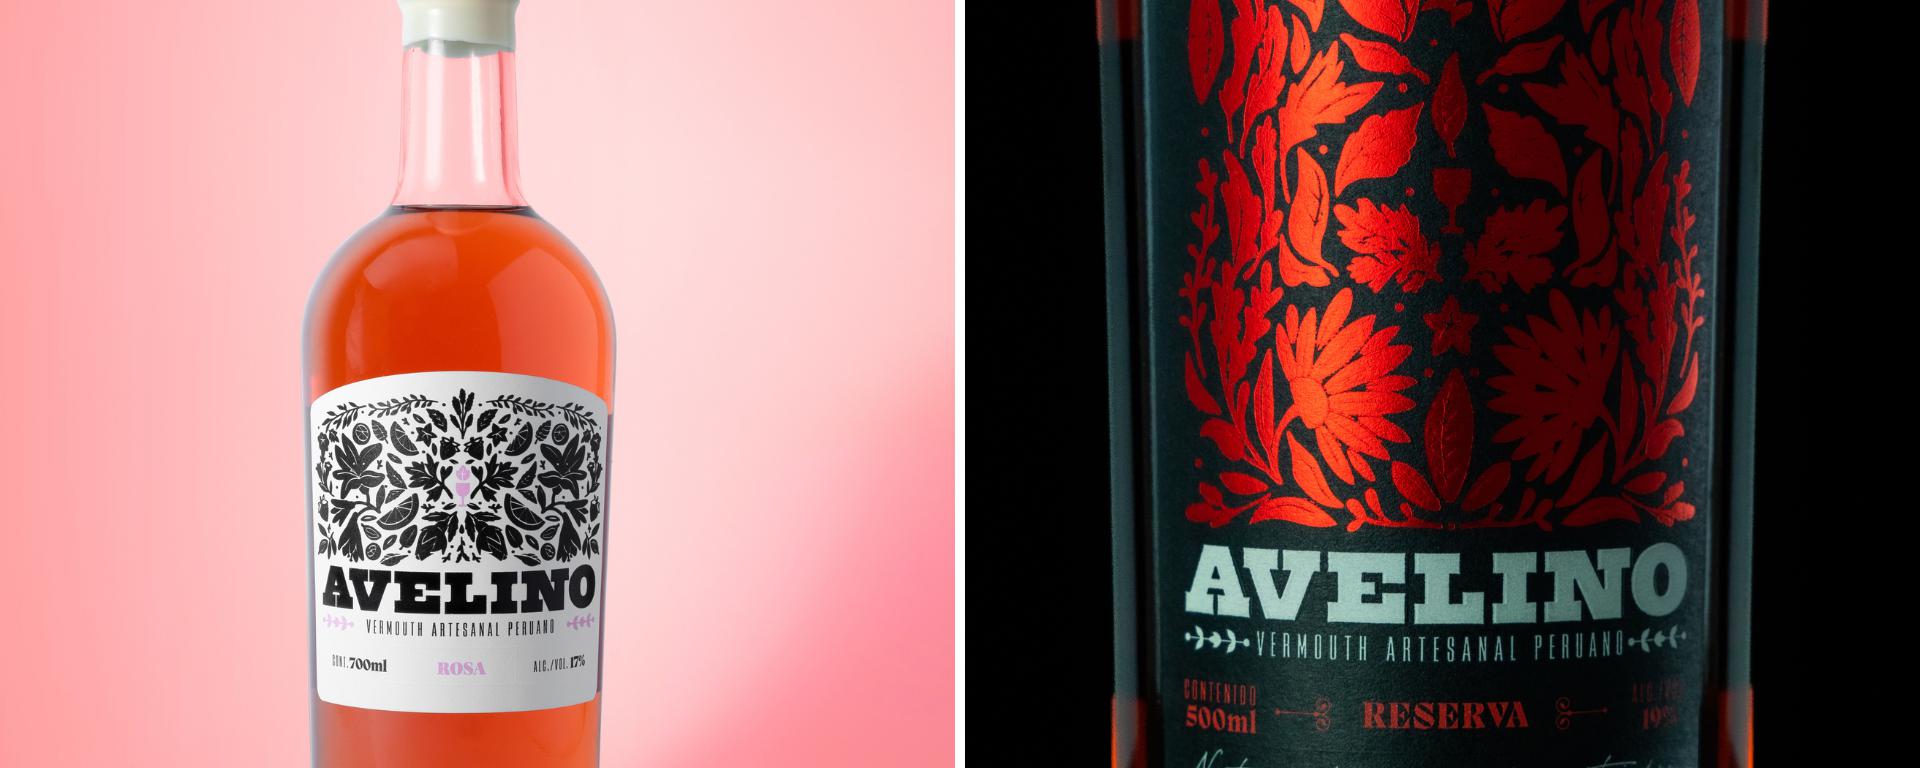 Avelino, el vermouth peruano que ingresó a la prestigiosa lista del Top Trending Brand 